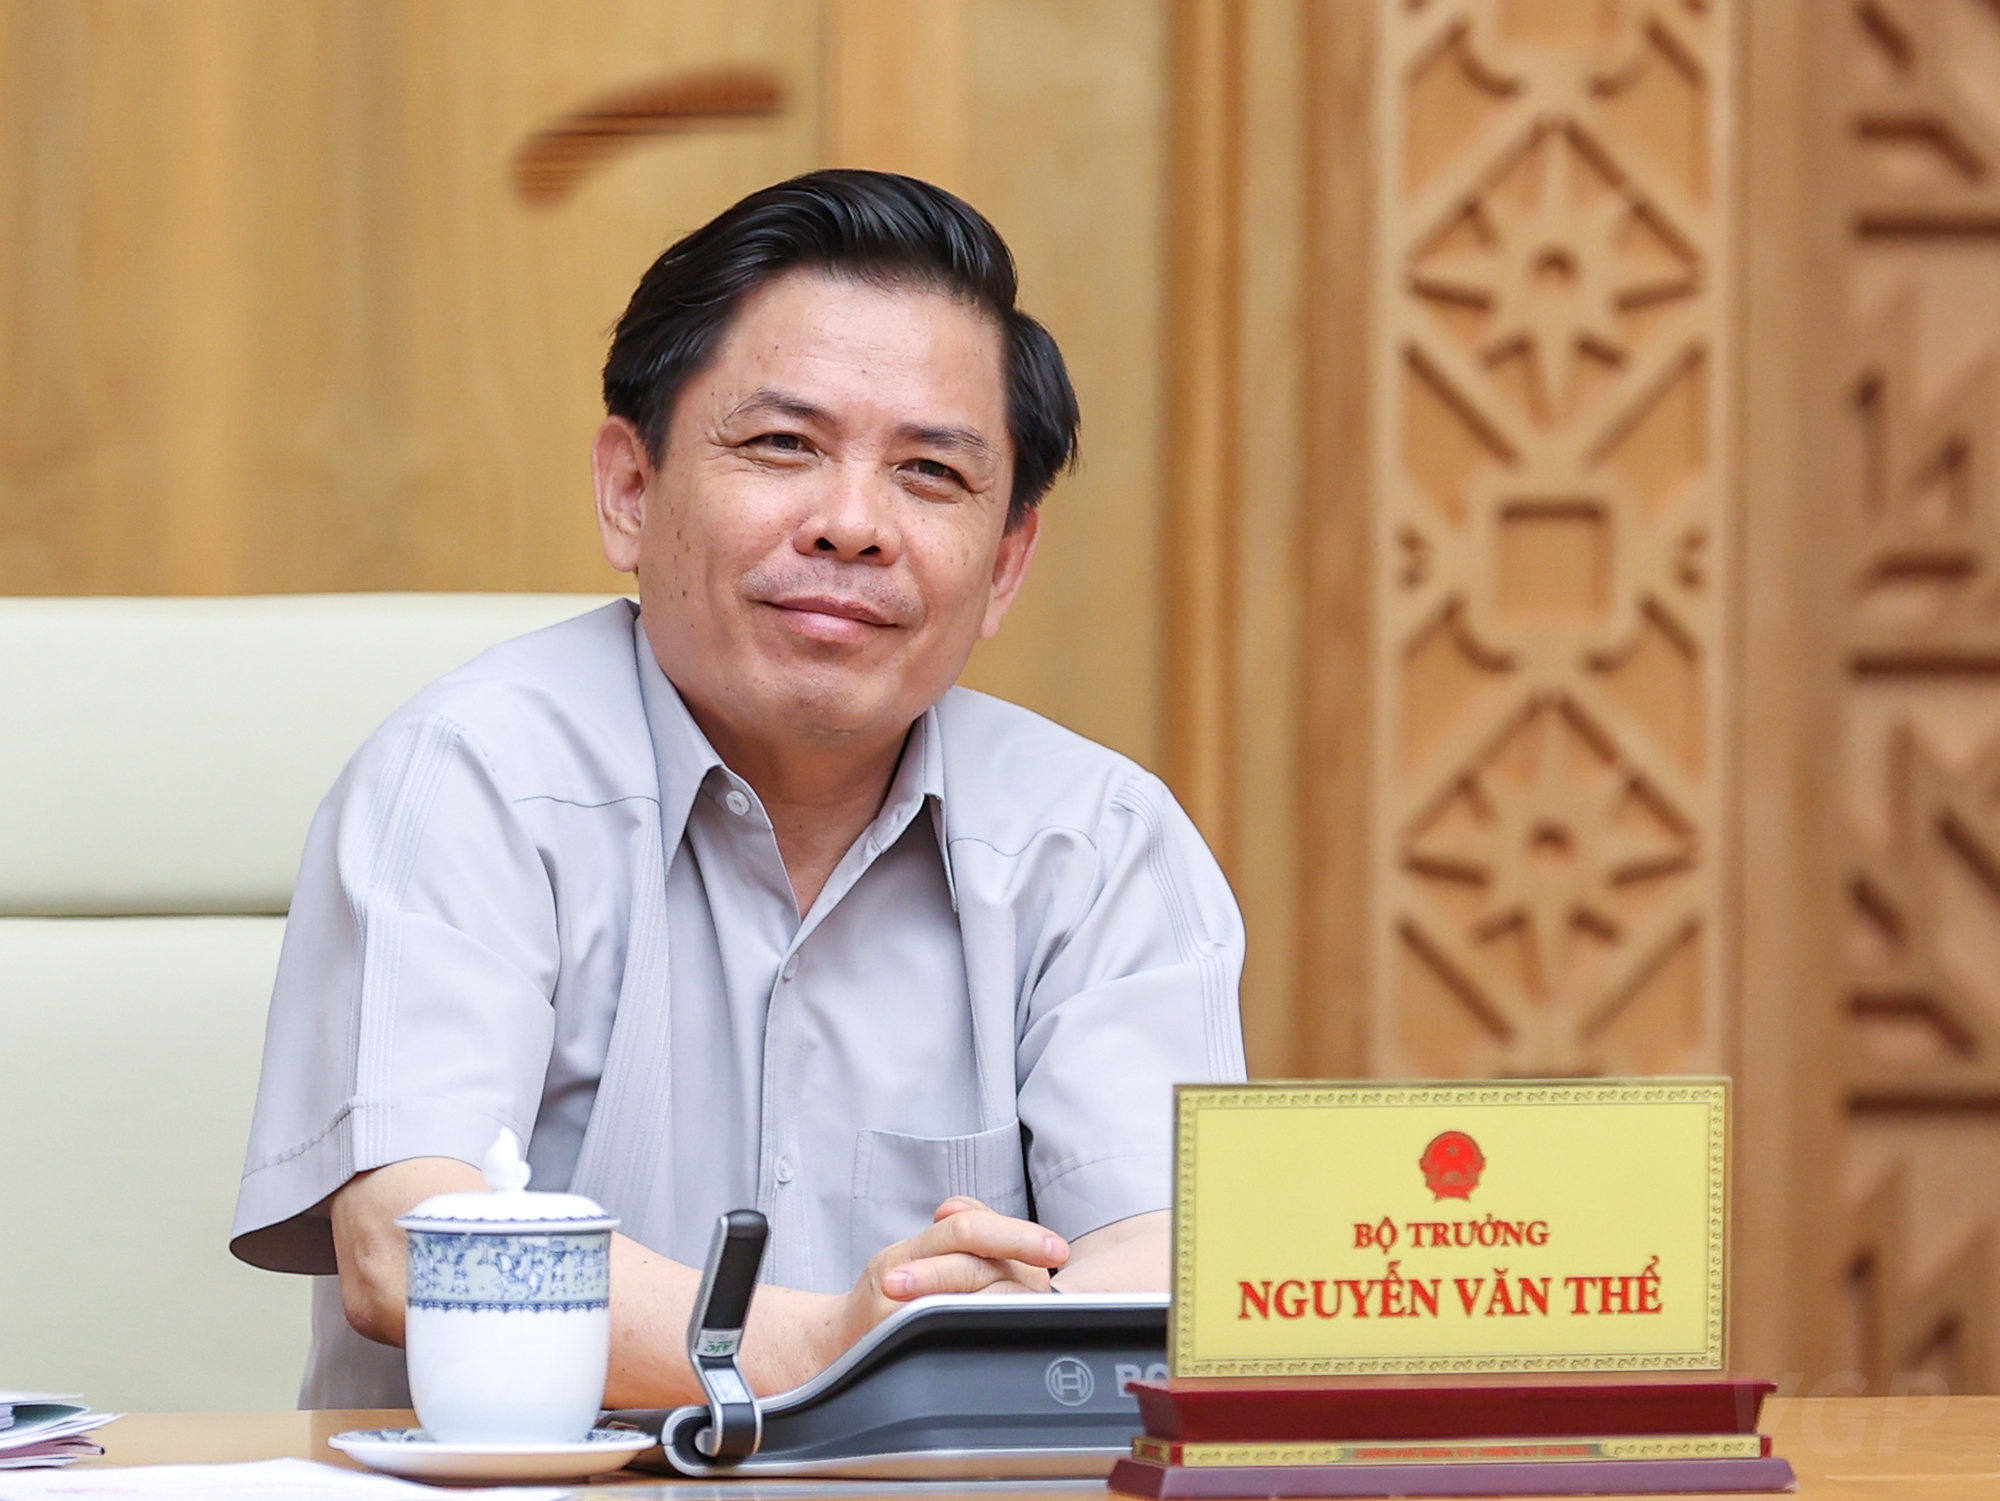 Bí quyết “tiêu tiền” của Bộ trưởng Nguyễn Văn Thể